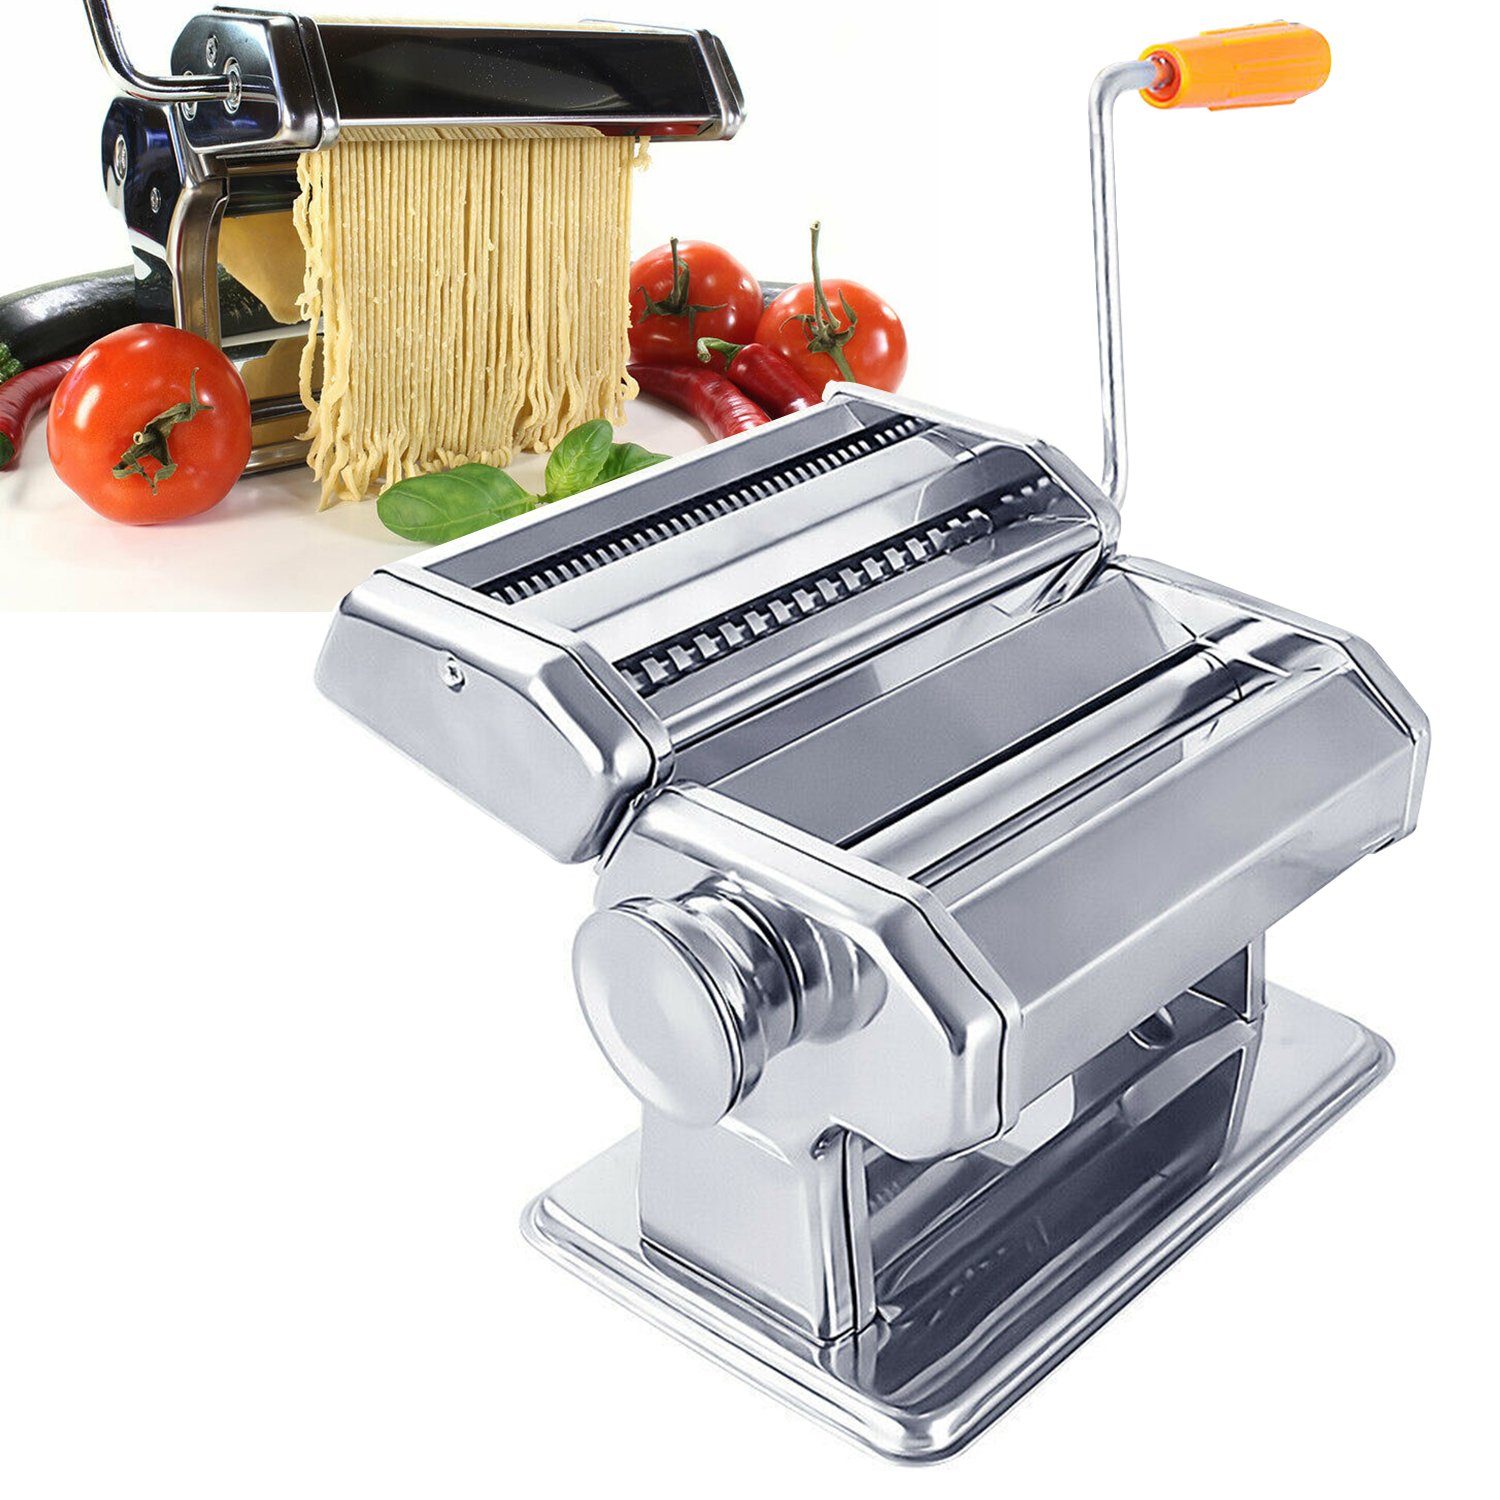 Clanmacy Nudelmaschine Edelstahl Pasta Maker, 7 Einstellbare Dicke,  Pastamaschine mit 2 Schneiden, für Spaghetti Lasagne Nudeln